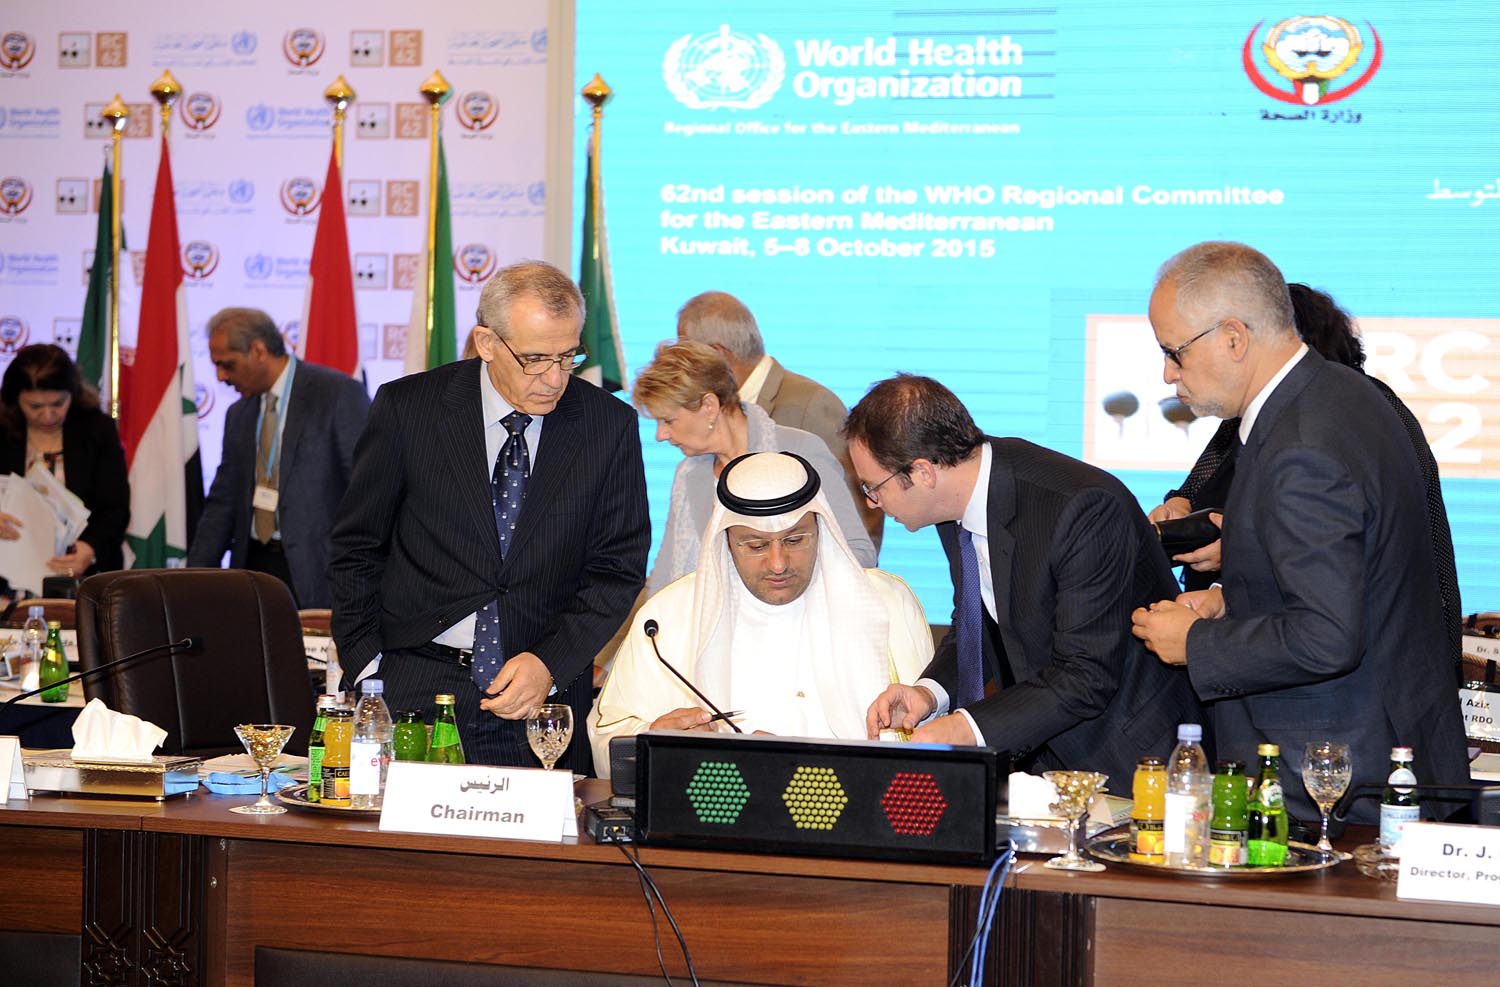 وزير الصحة الدكتور علي العبيدي خلال اختتام أعمال الاجتماع ال62 للجنة الاقليمية لشرق المتوسط لمنظمة الصحة العالمية